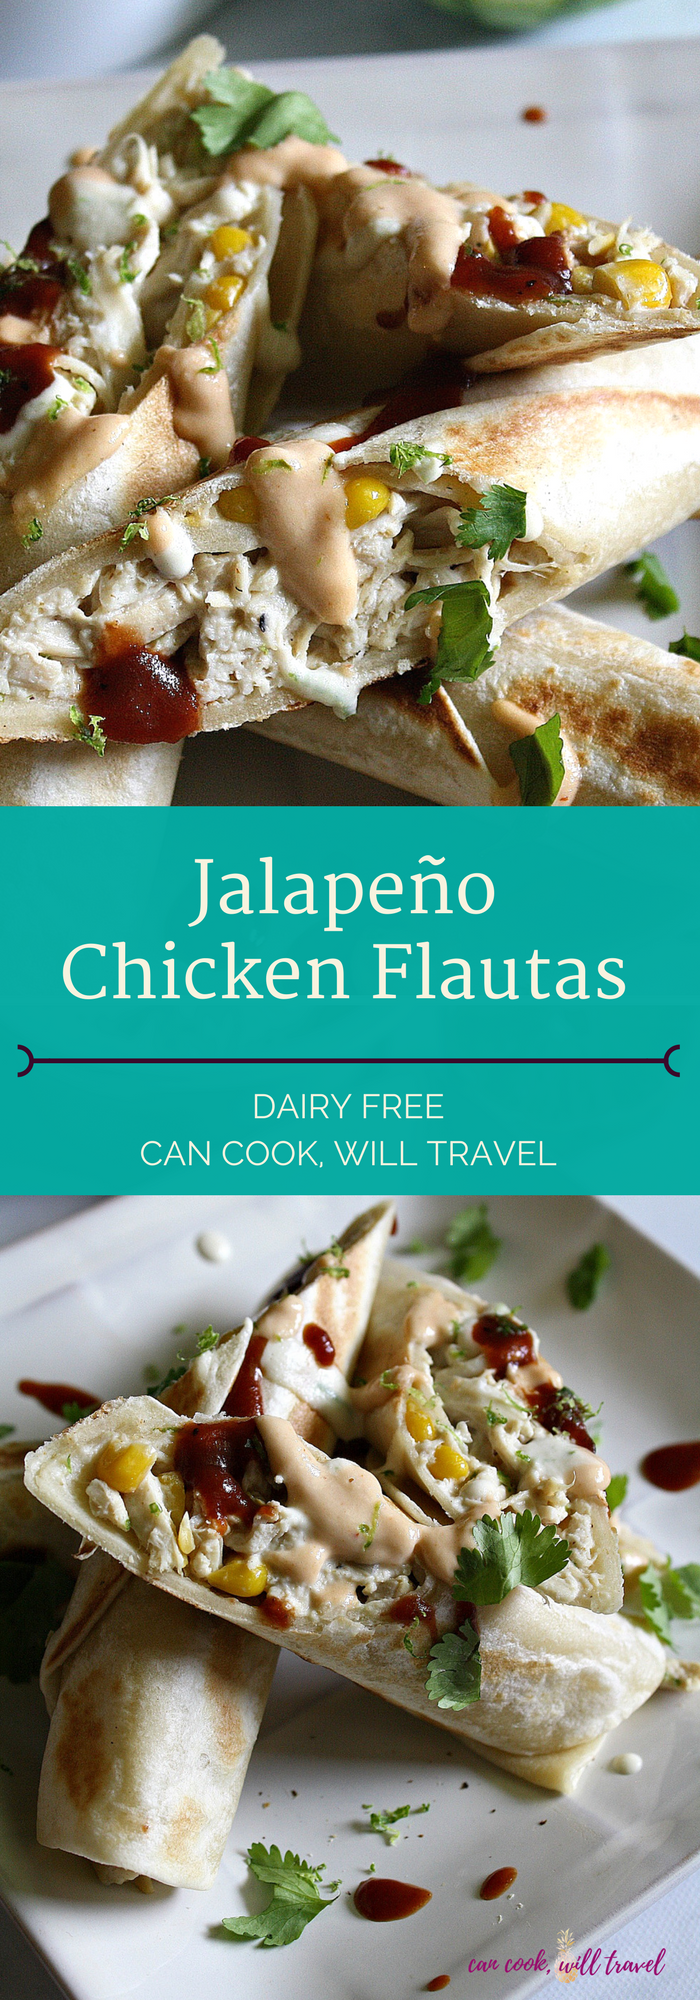 Jalapeno Chicken Flautas_Collage1